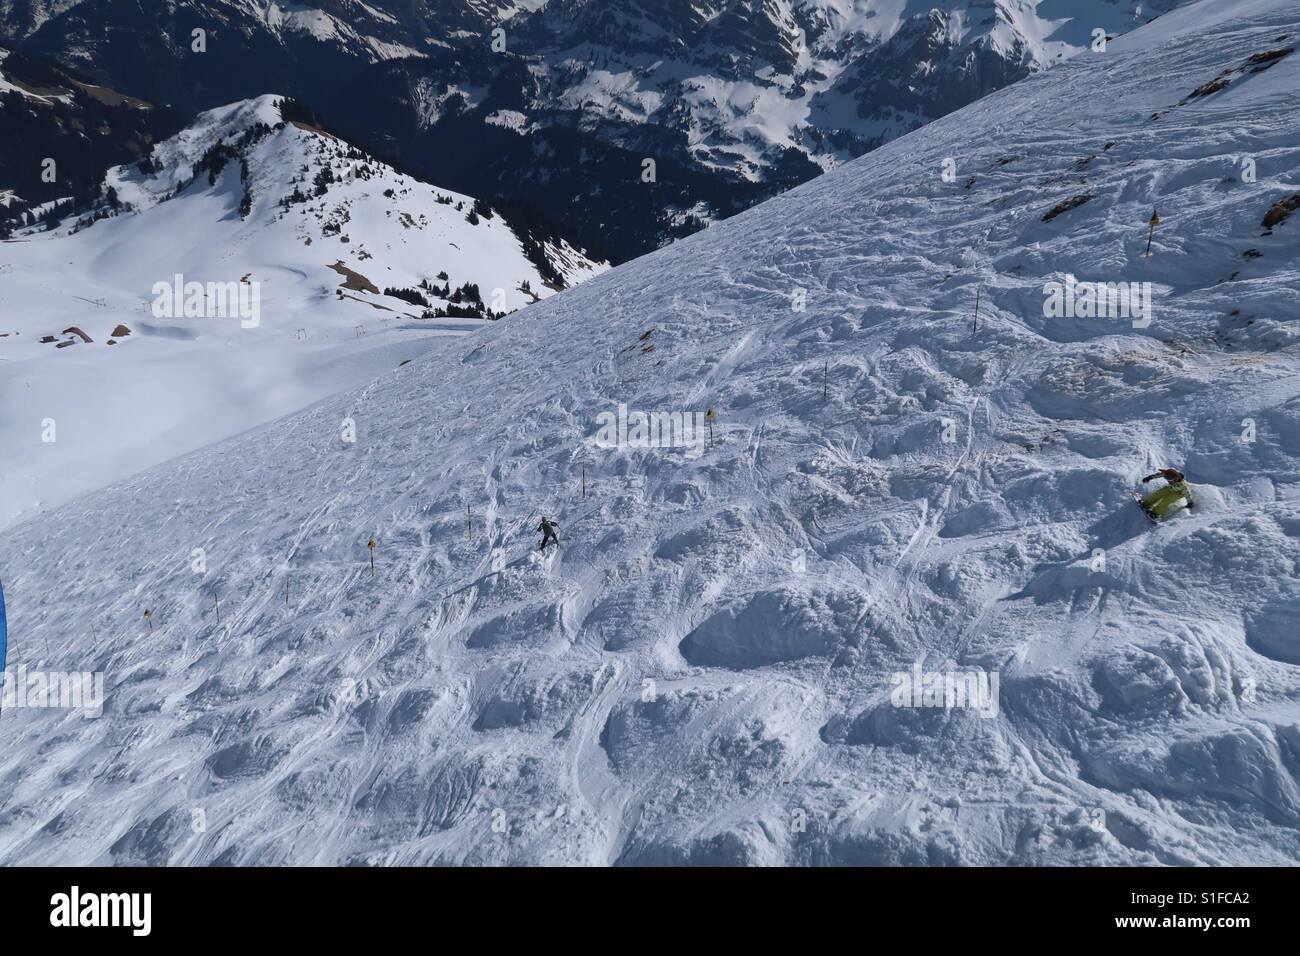 Les gens de la tentative de ski et snowboard sur le fameux mur suisse dans  la station de ski Portes du Soleil près de Morzine sur la frontière franco- suisse Photo Stock -